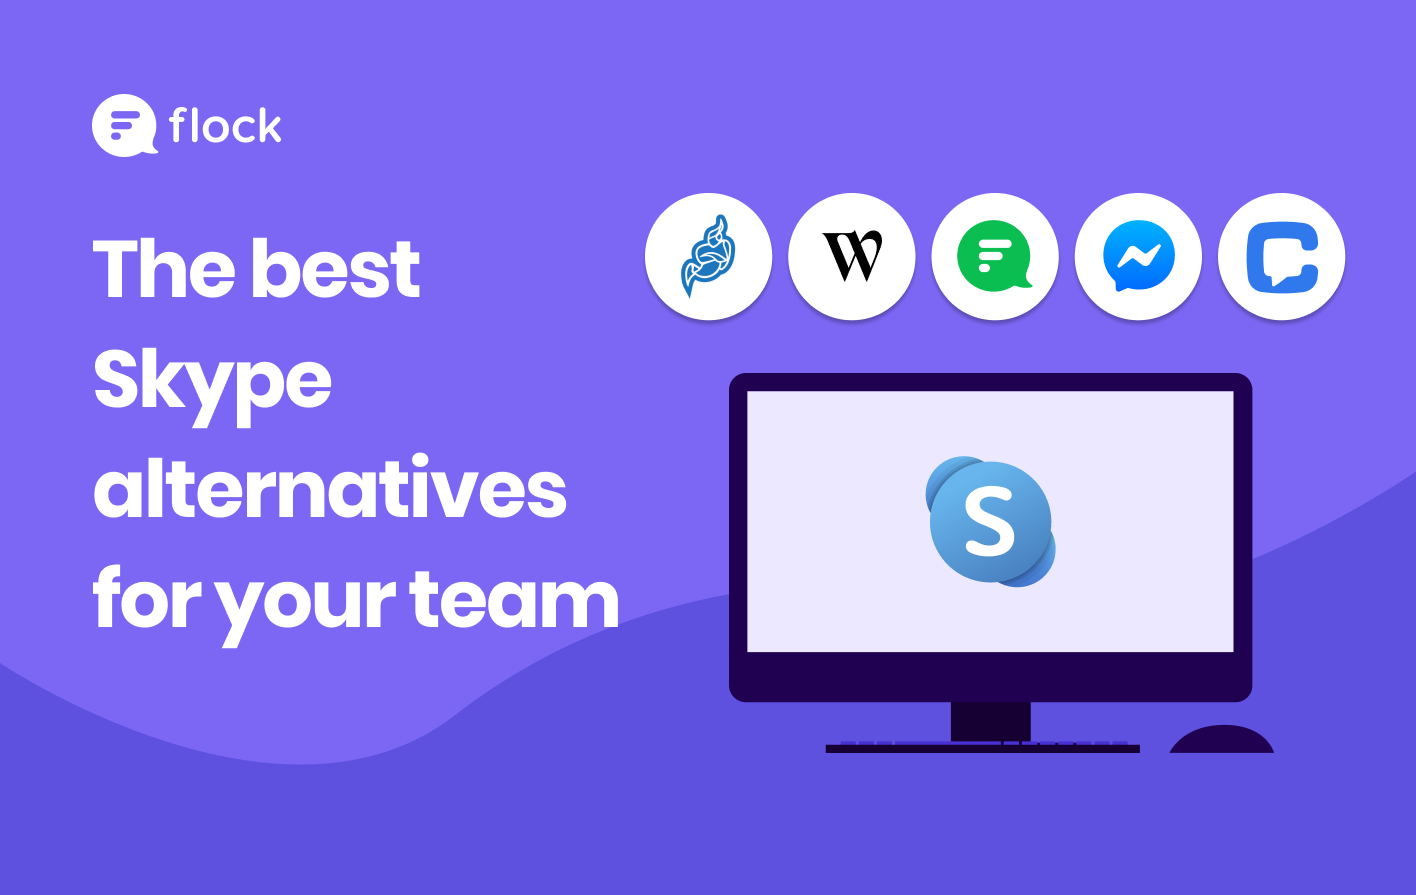 The best Skype alternatives for your team